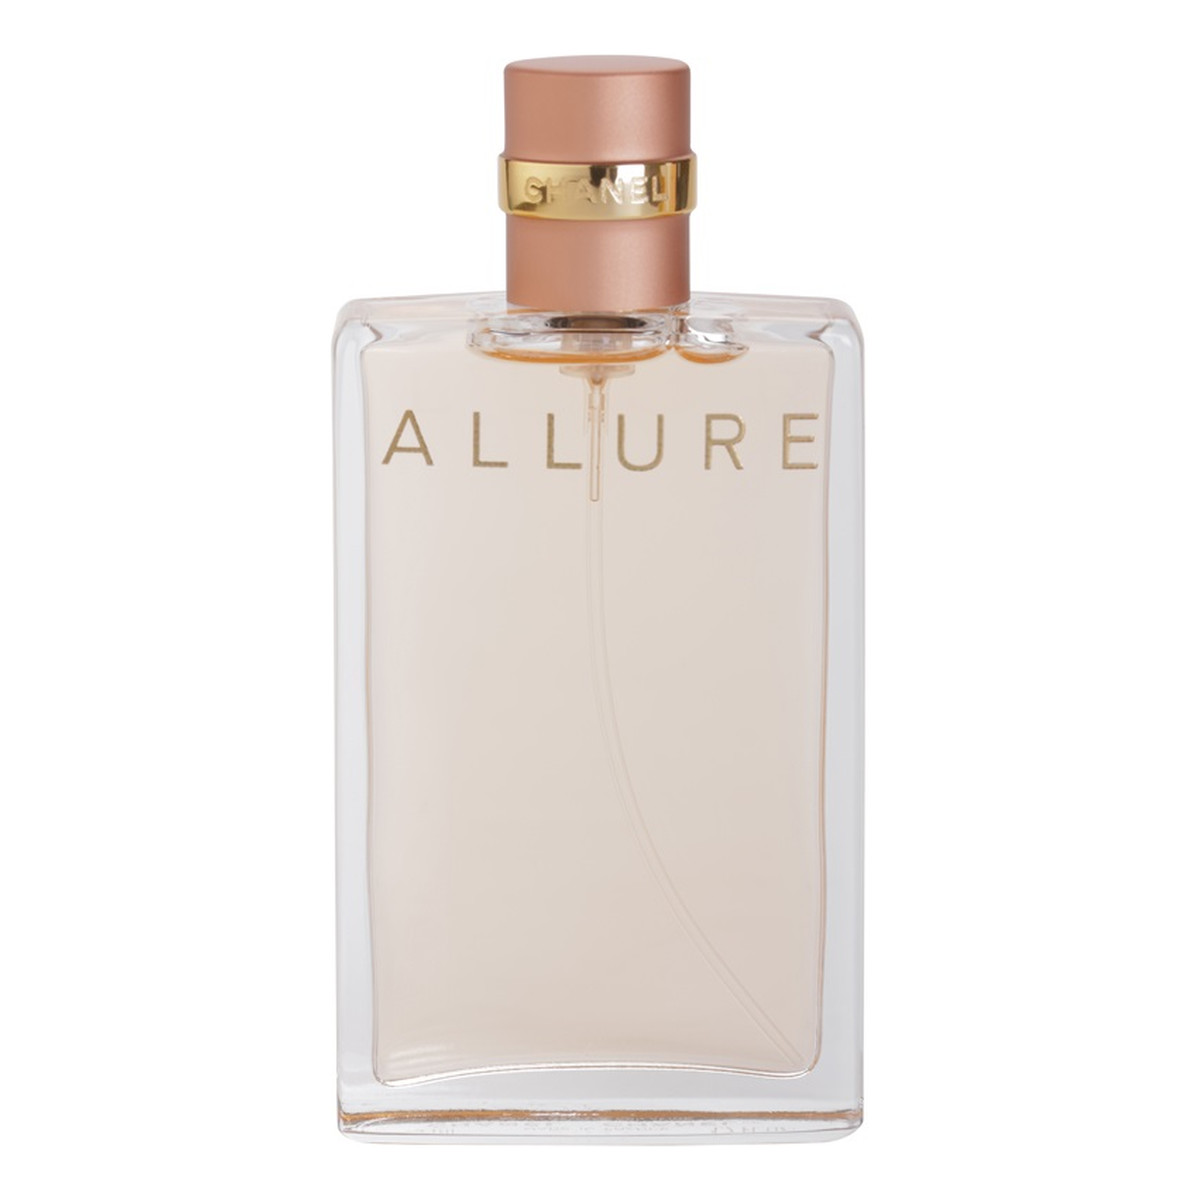 Chanel Allure woda perfumowana dla kobiet 35ml